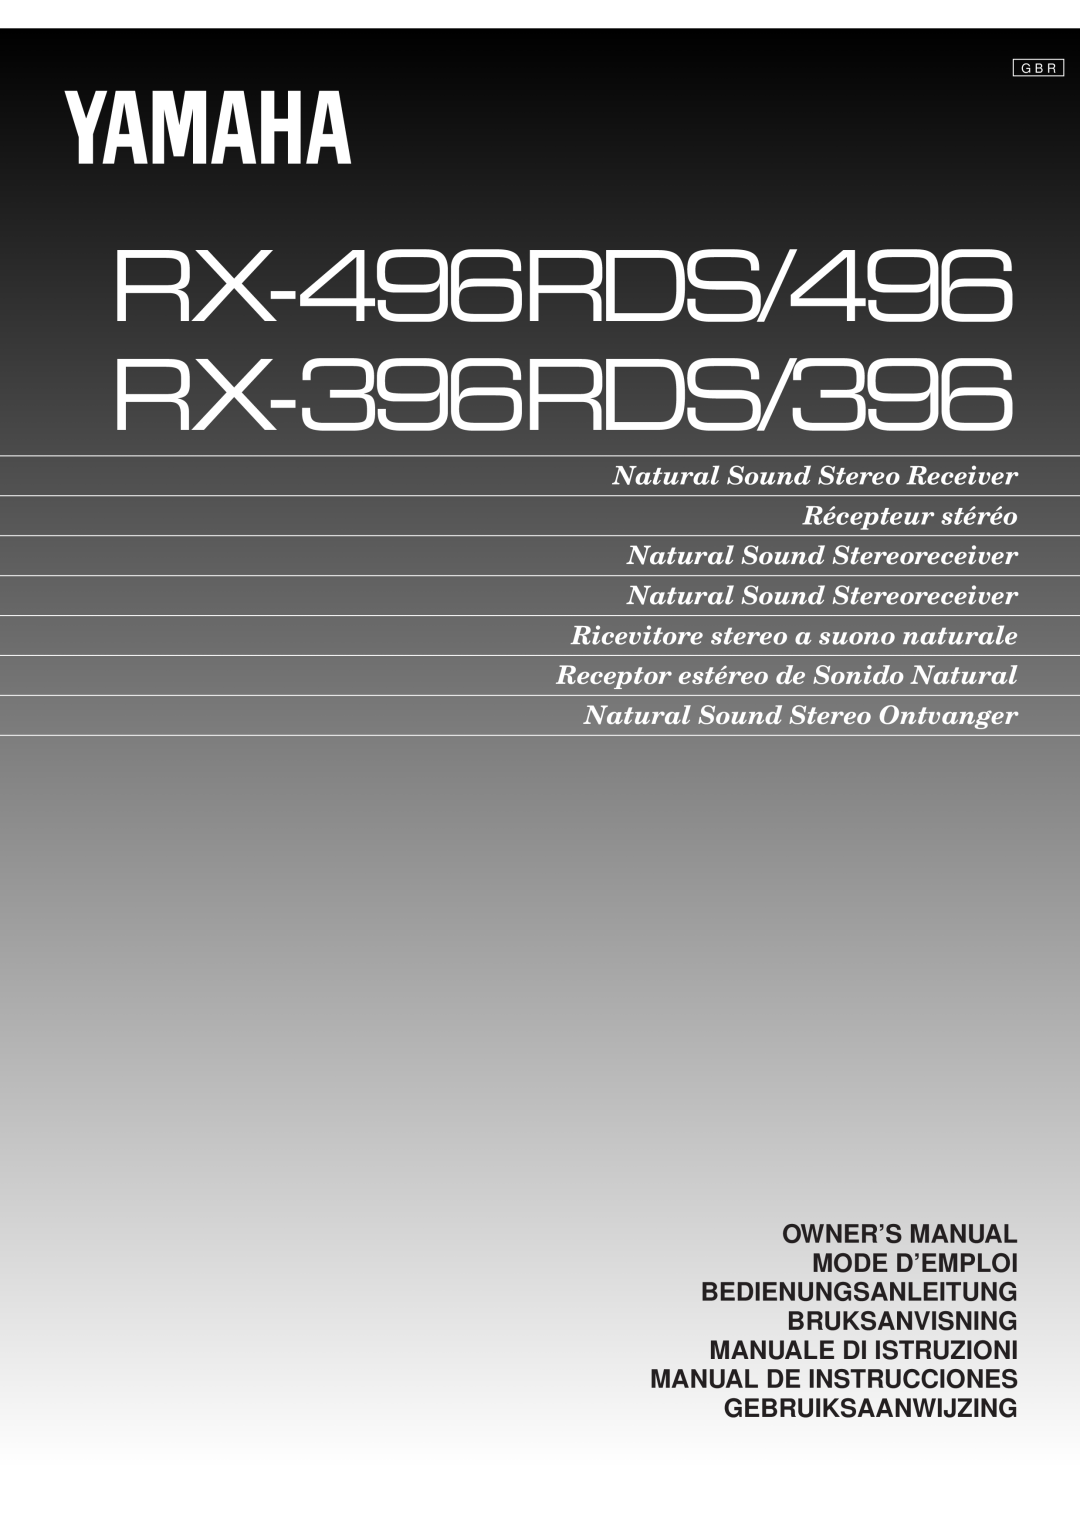 Yamaha owner manual Manual De Instrucciones Gebruiksaanwijzing, RX-496RDS/496 RX-396RDS/396, G B R 